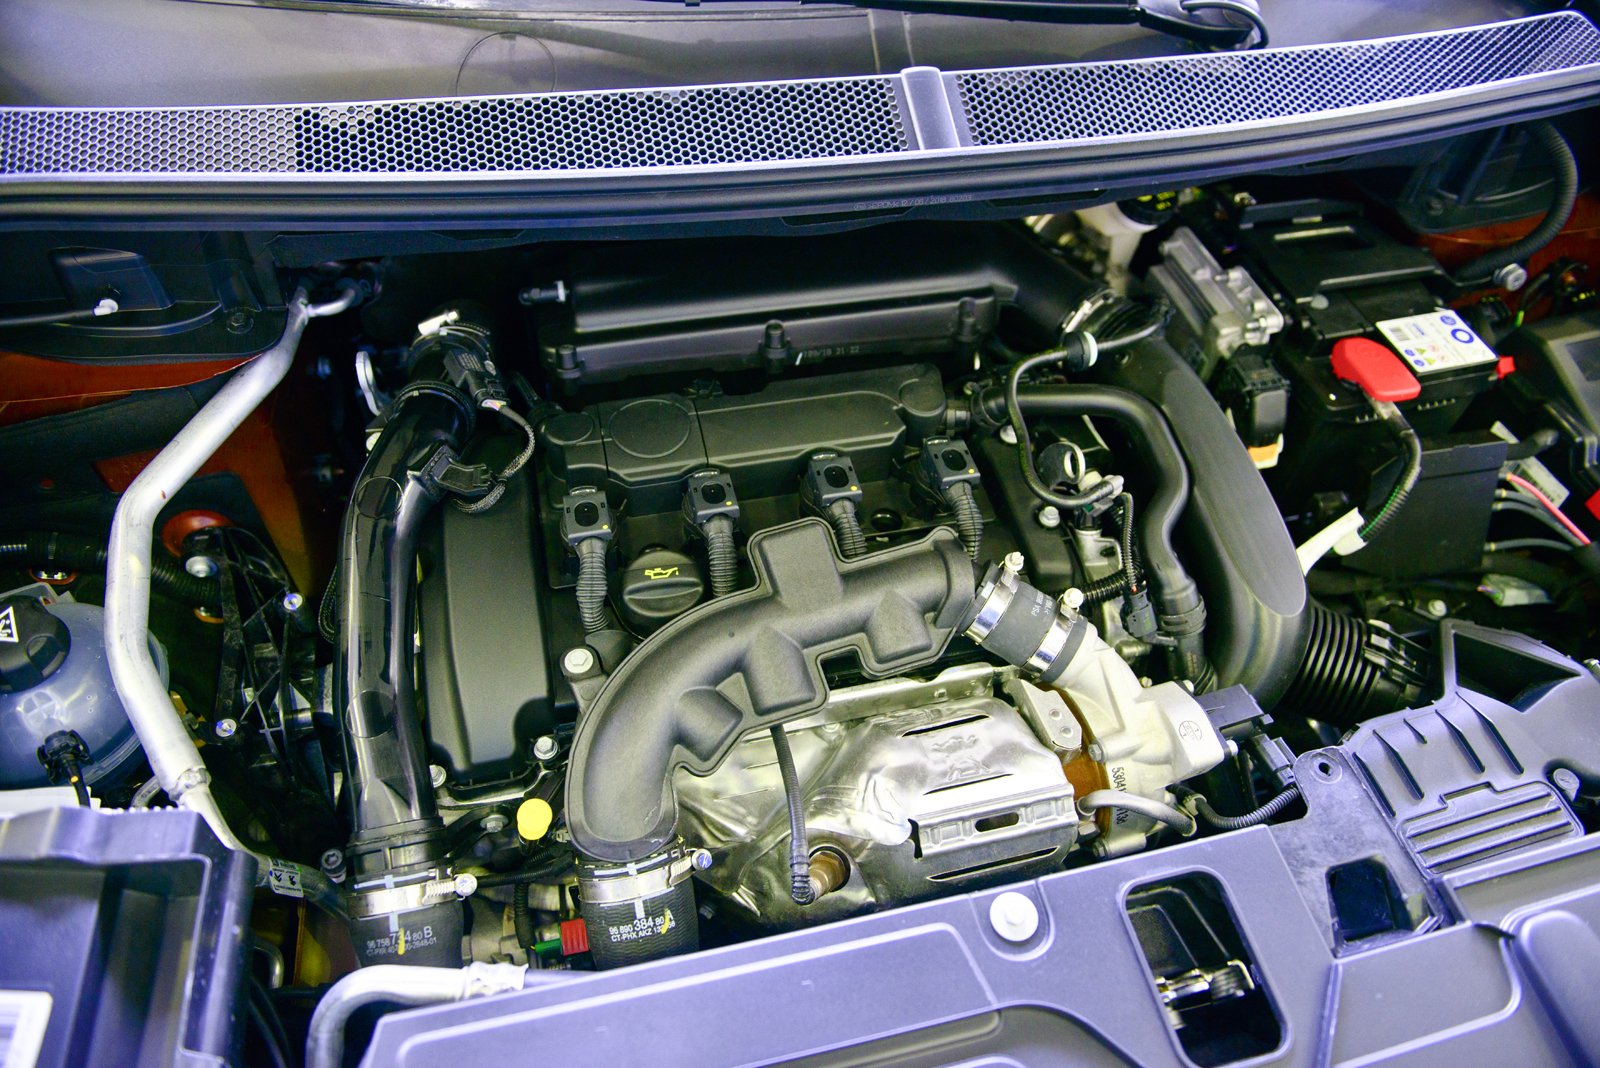 Peugeot 3008 дизель. Двигатель Пежо 3008. Мотор Пежо 3008 турбо. Peugeot 3008 Turbo мотор. Вид двигателя Пежо 3008 турбо.